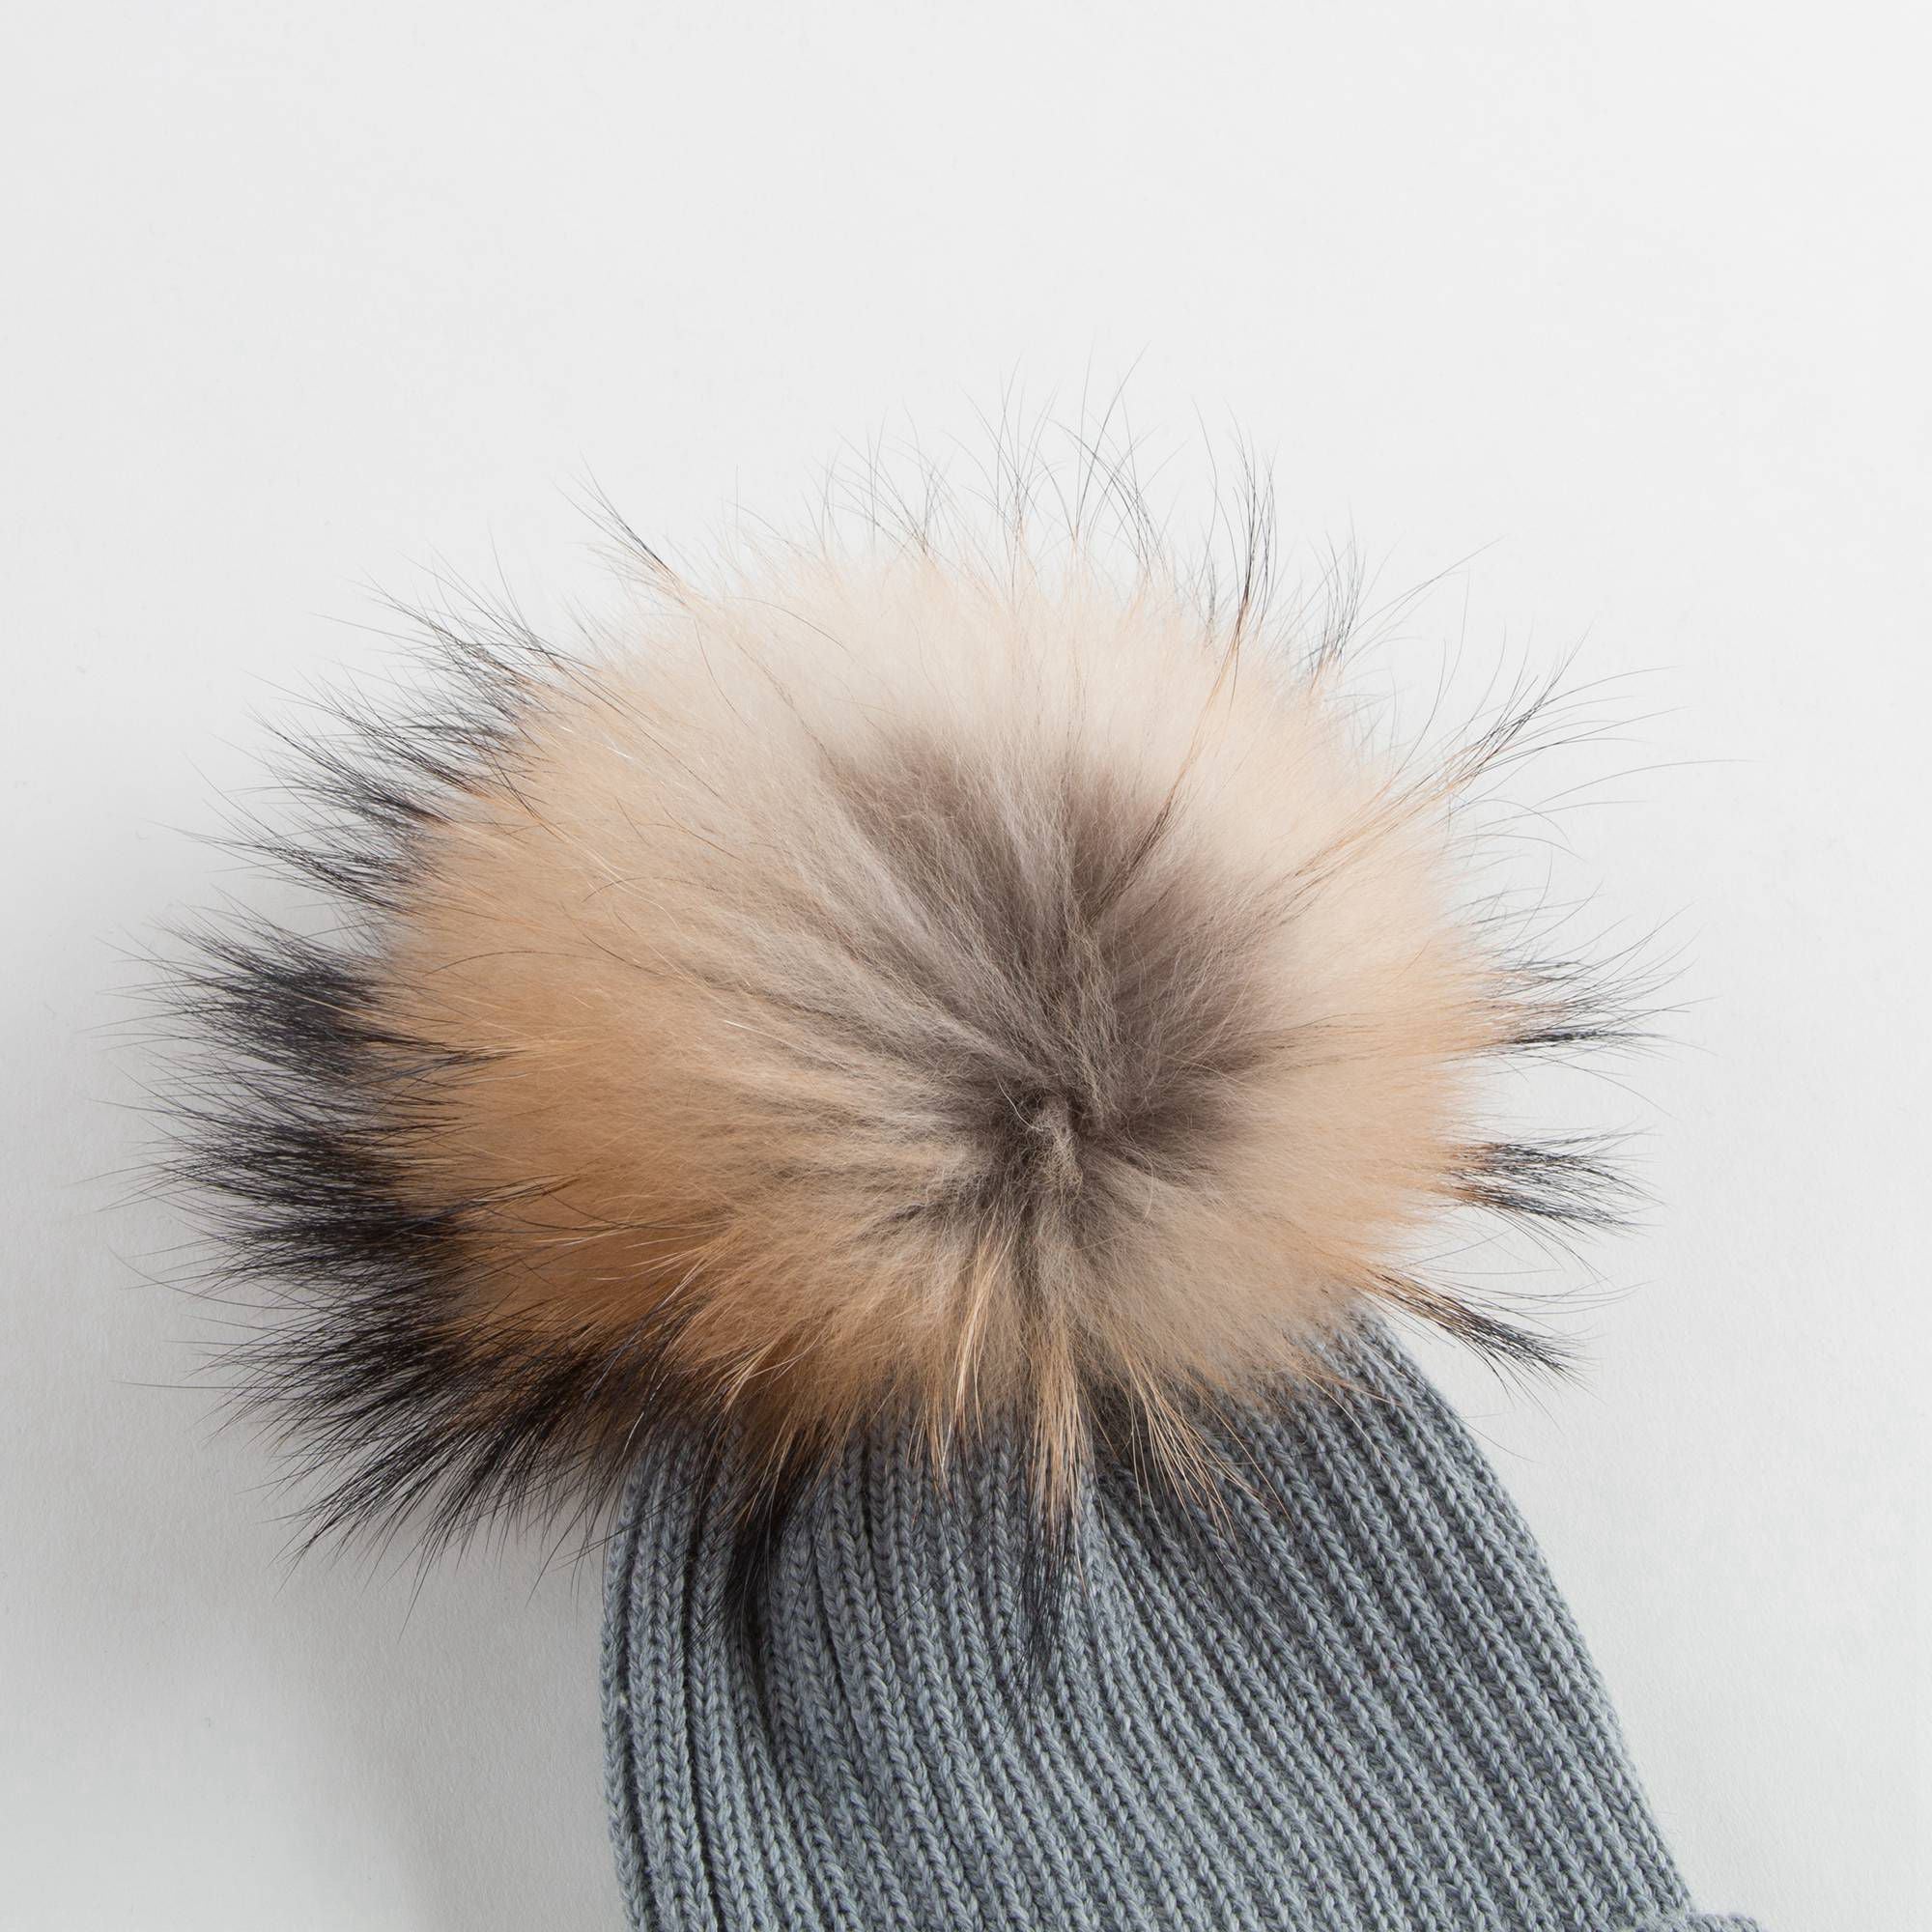 Boys & Girls Grey Knitted Hat With Fur Pom-Pom Trim